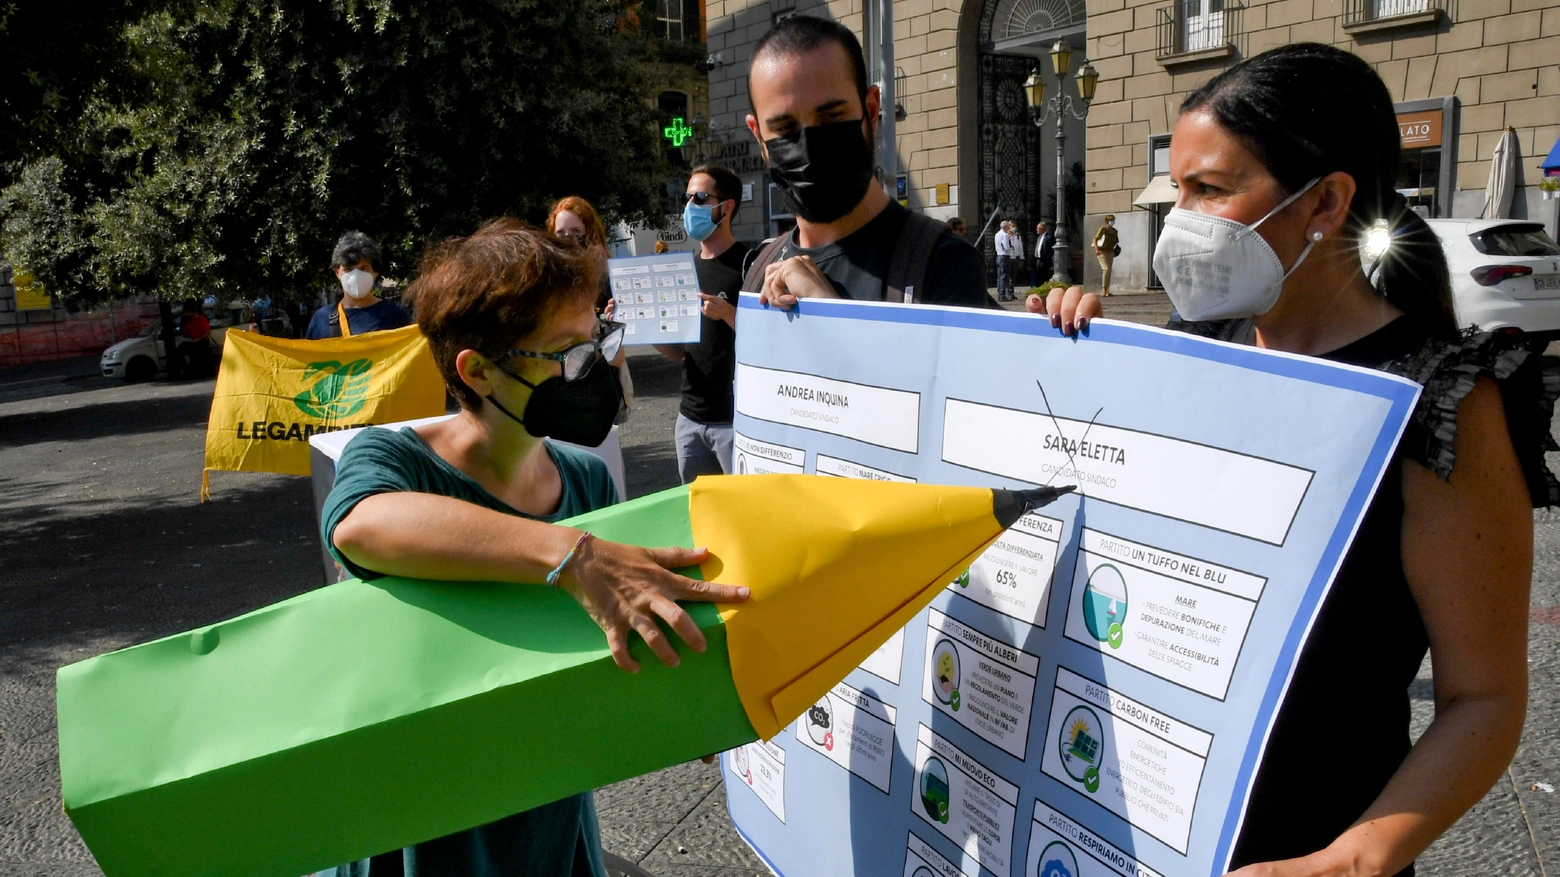 Flash mob di Legambiente in occasione delle elezioni comunali di Napoli